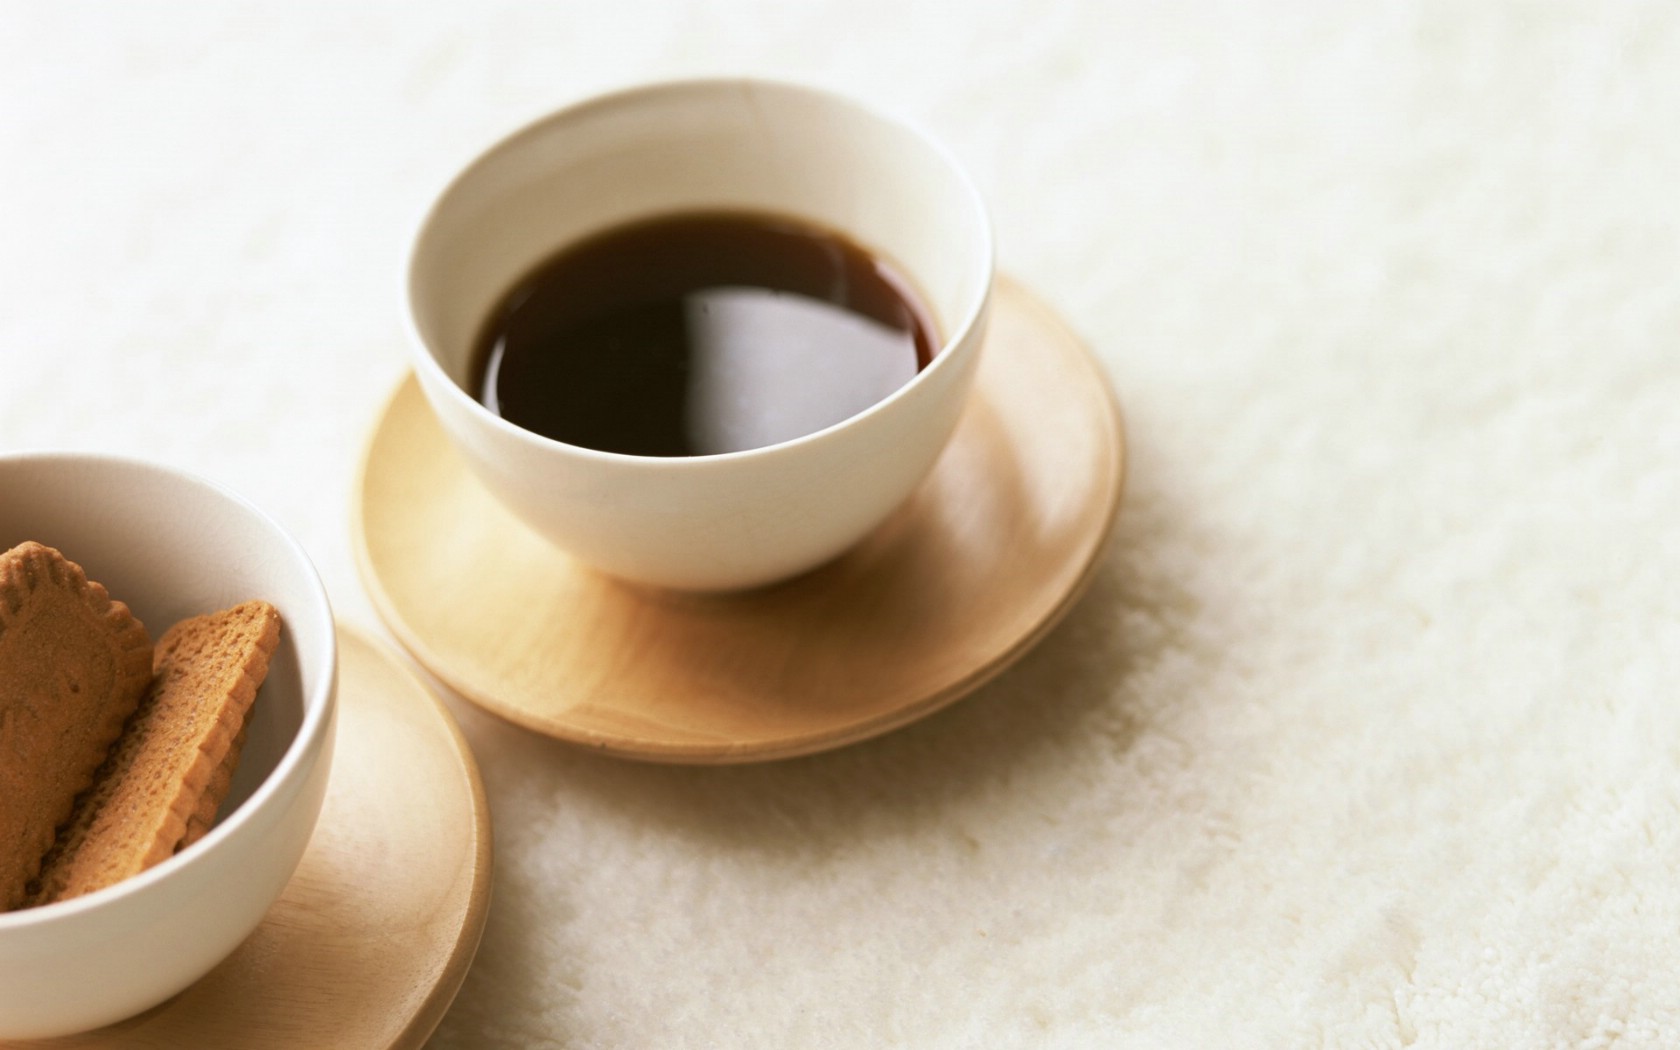 壁纸1680x1050 早餐咖啡图片 品味咖啡摄影壁纸 日本茶道文化与健康饮品壁纸 日本茶道文化与健康饮品图片 日本茶道文化与健康饮品素材 摄影壁纸 摄影图库 摄影图片素材桌面壁纸